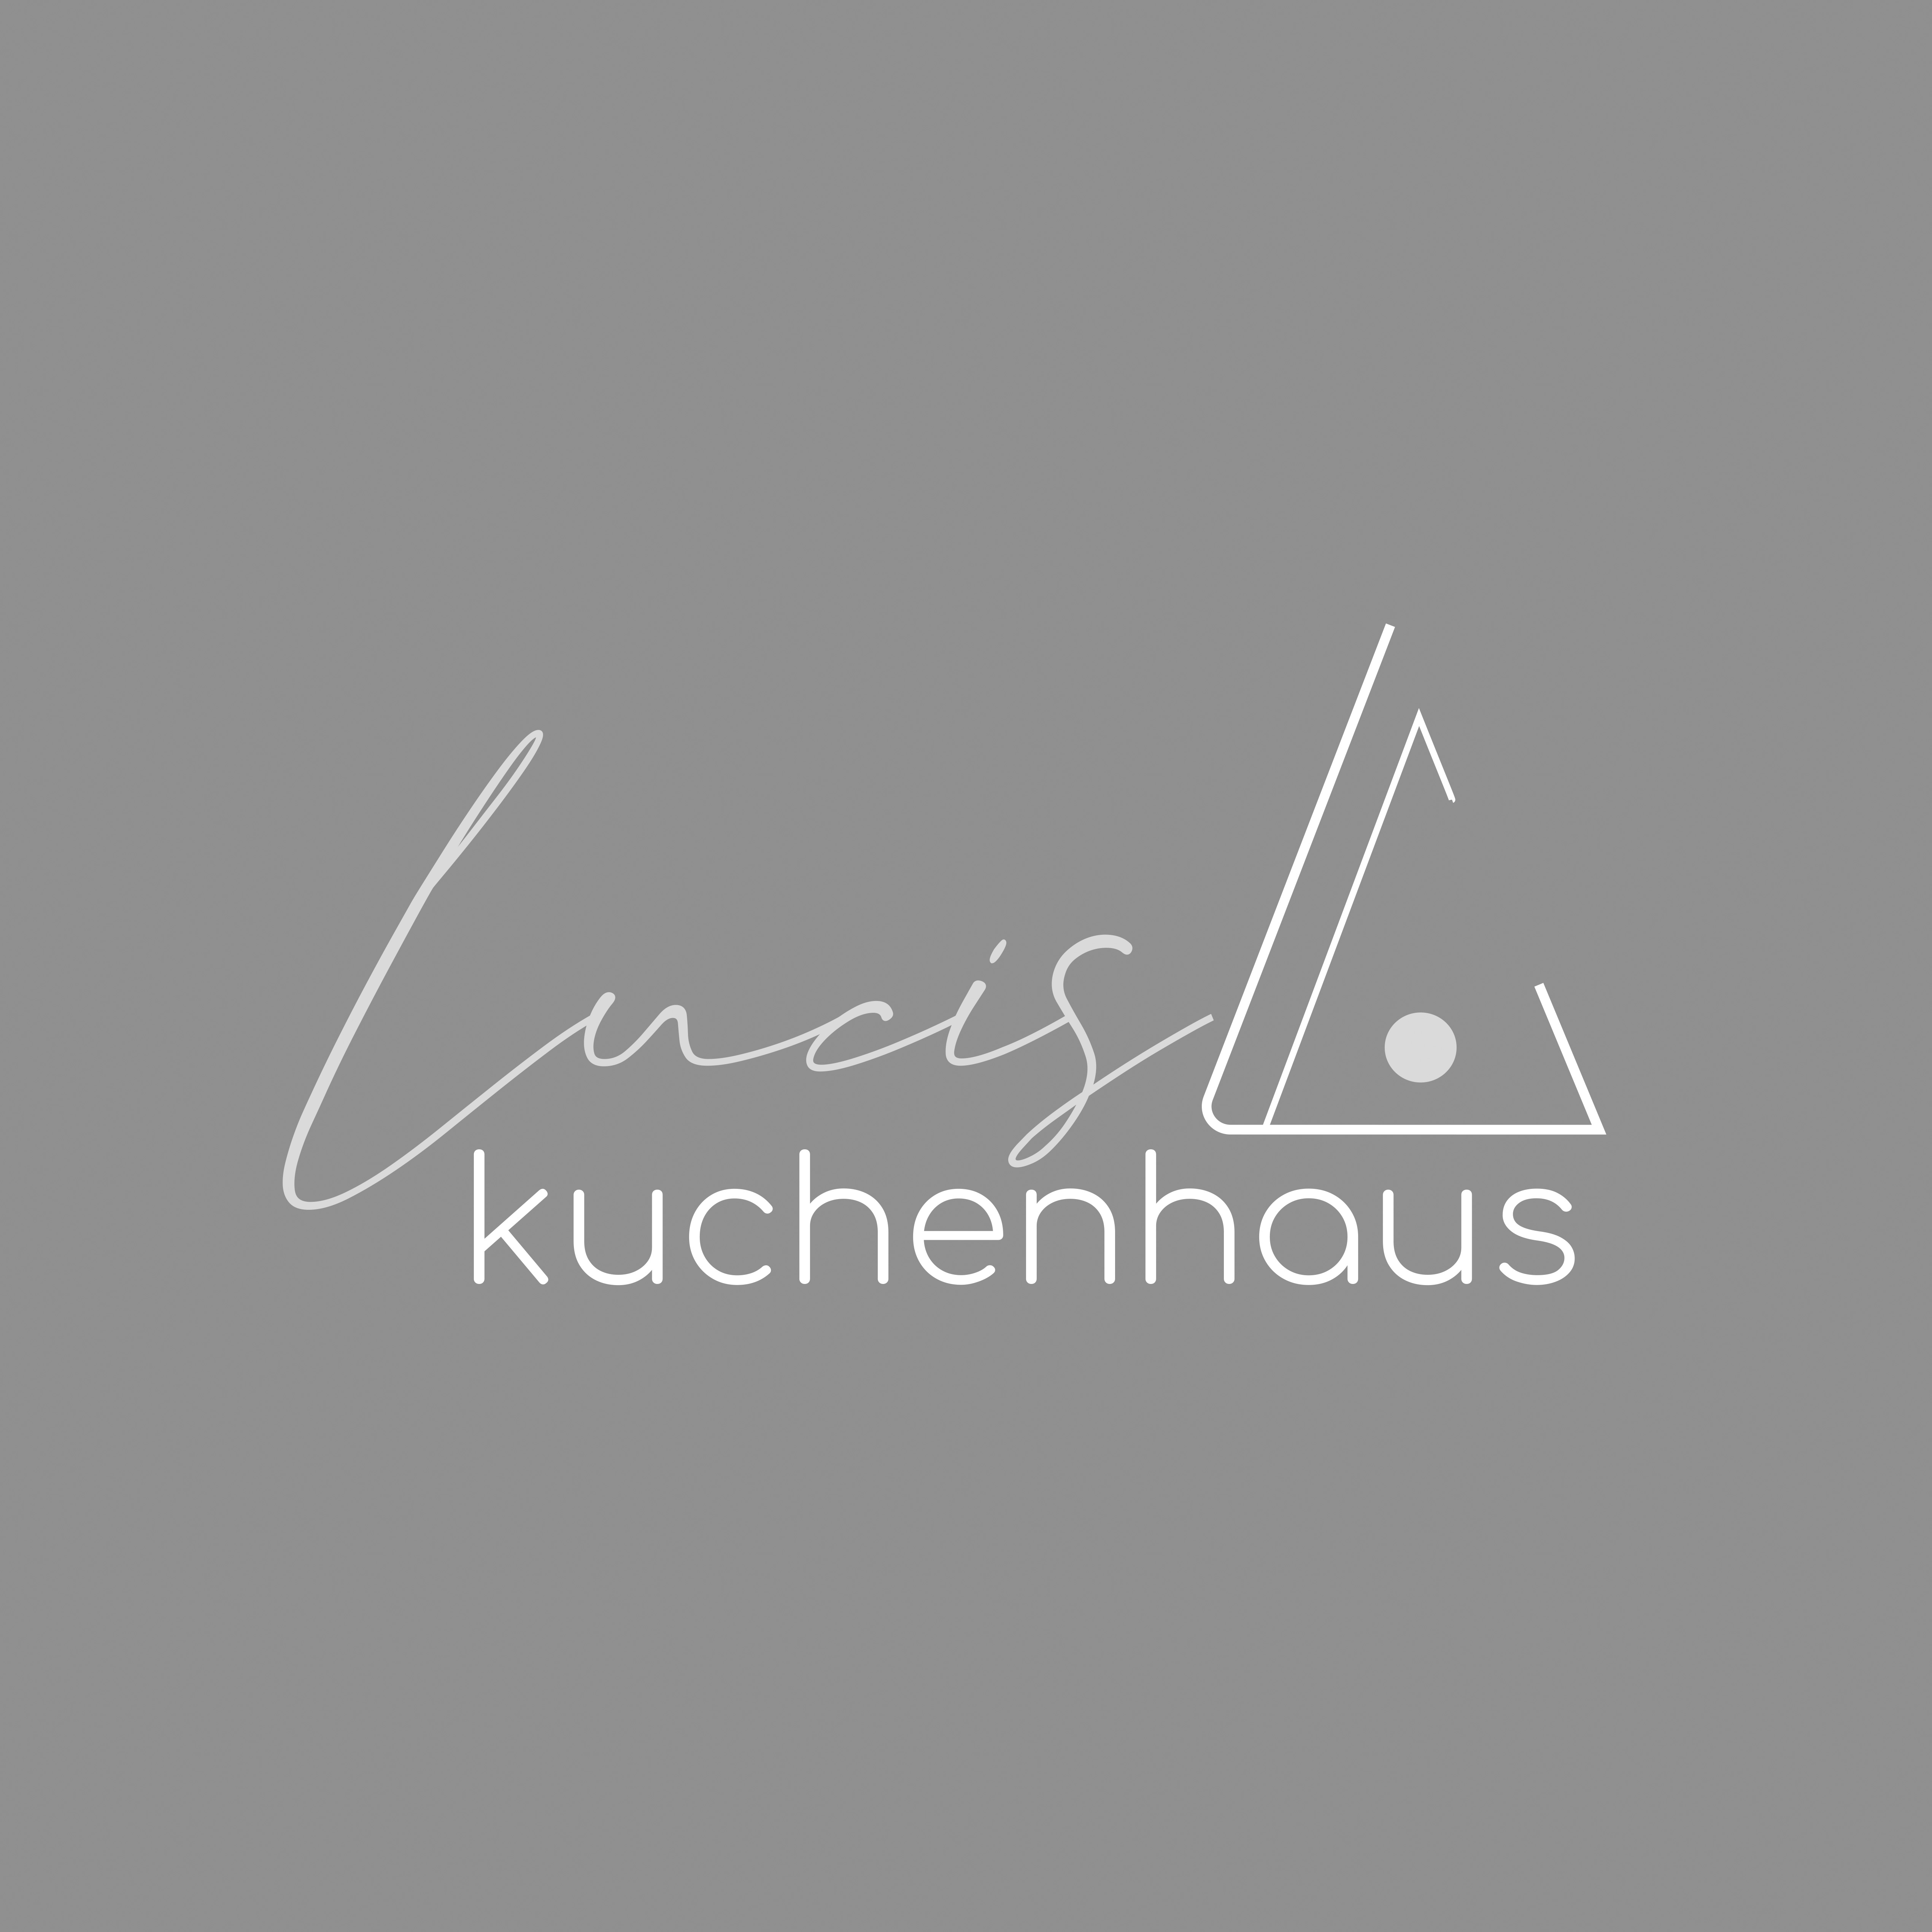 Lucis Kuchenhaus - Lucis Kuchenhaus